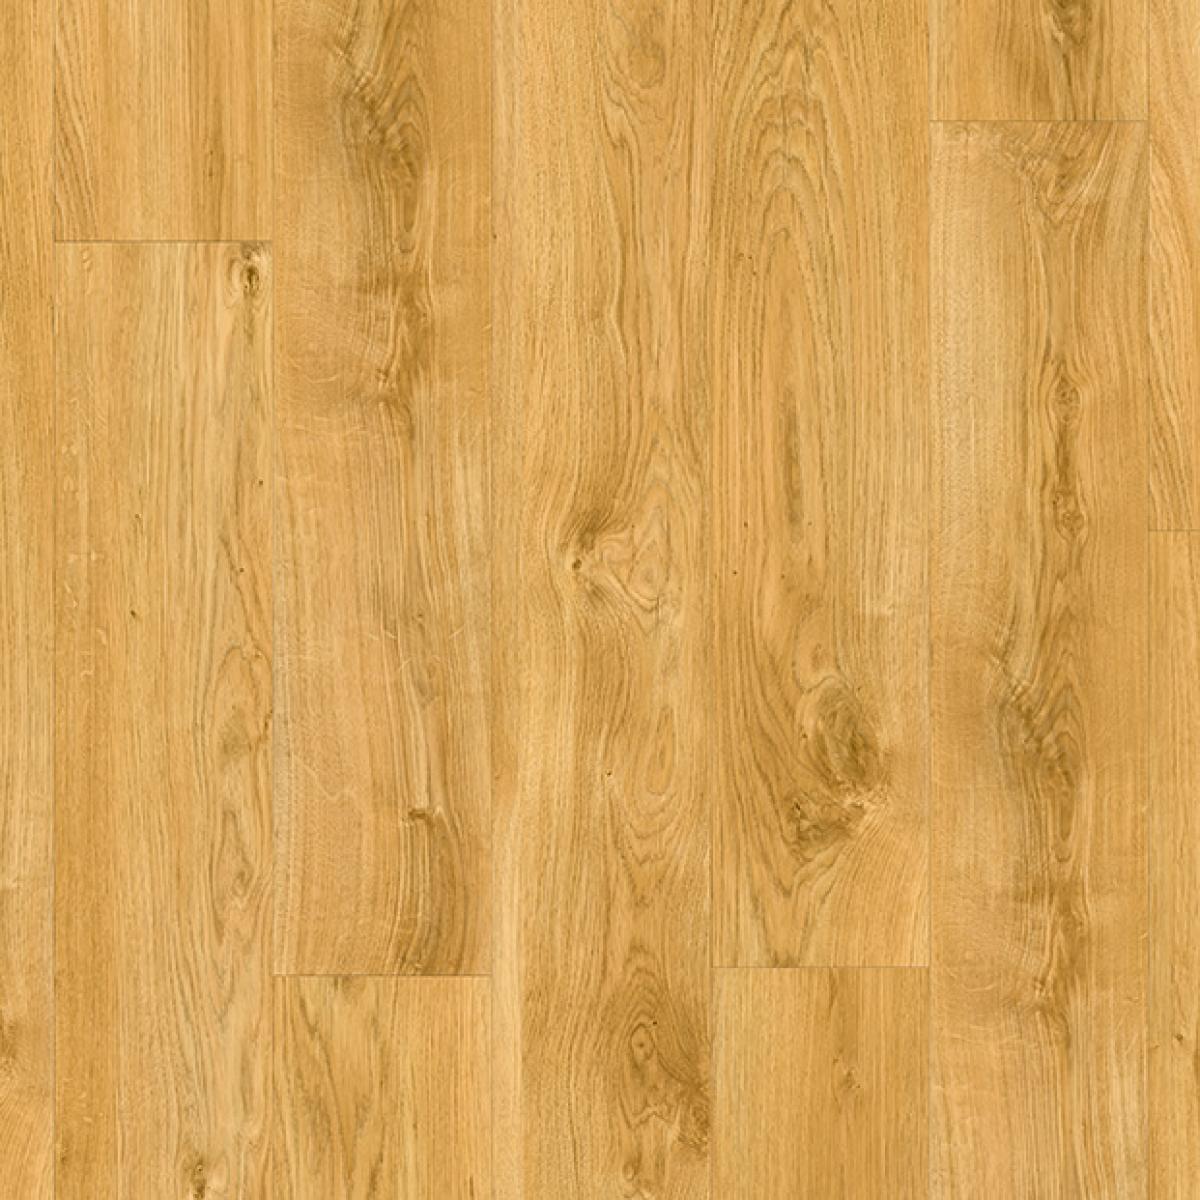 Classic Oak Natural Luxury Vinyl Flooring, Quick Step Uniclic Laminate Floor Tiles